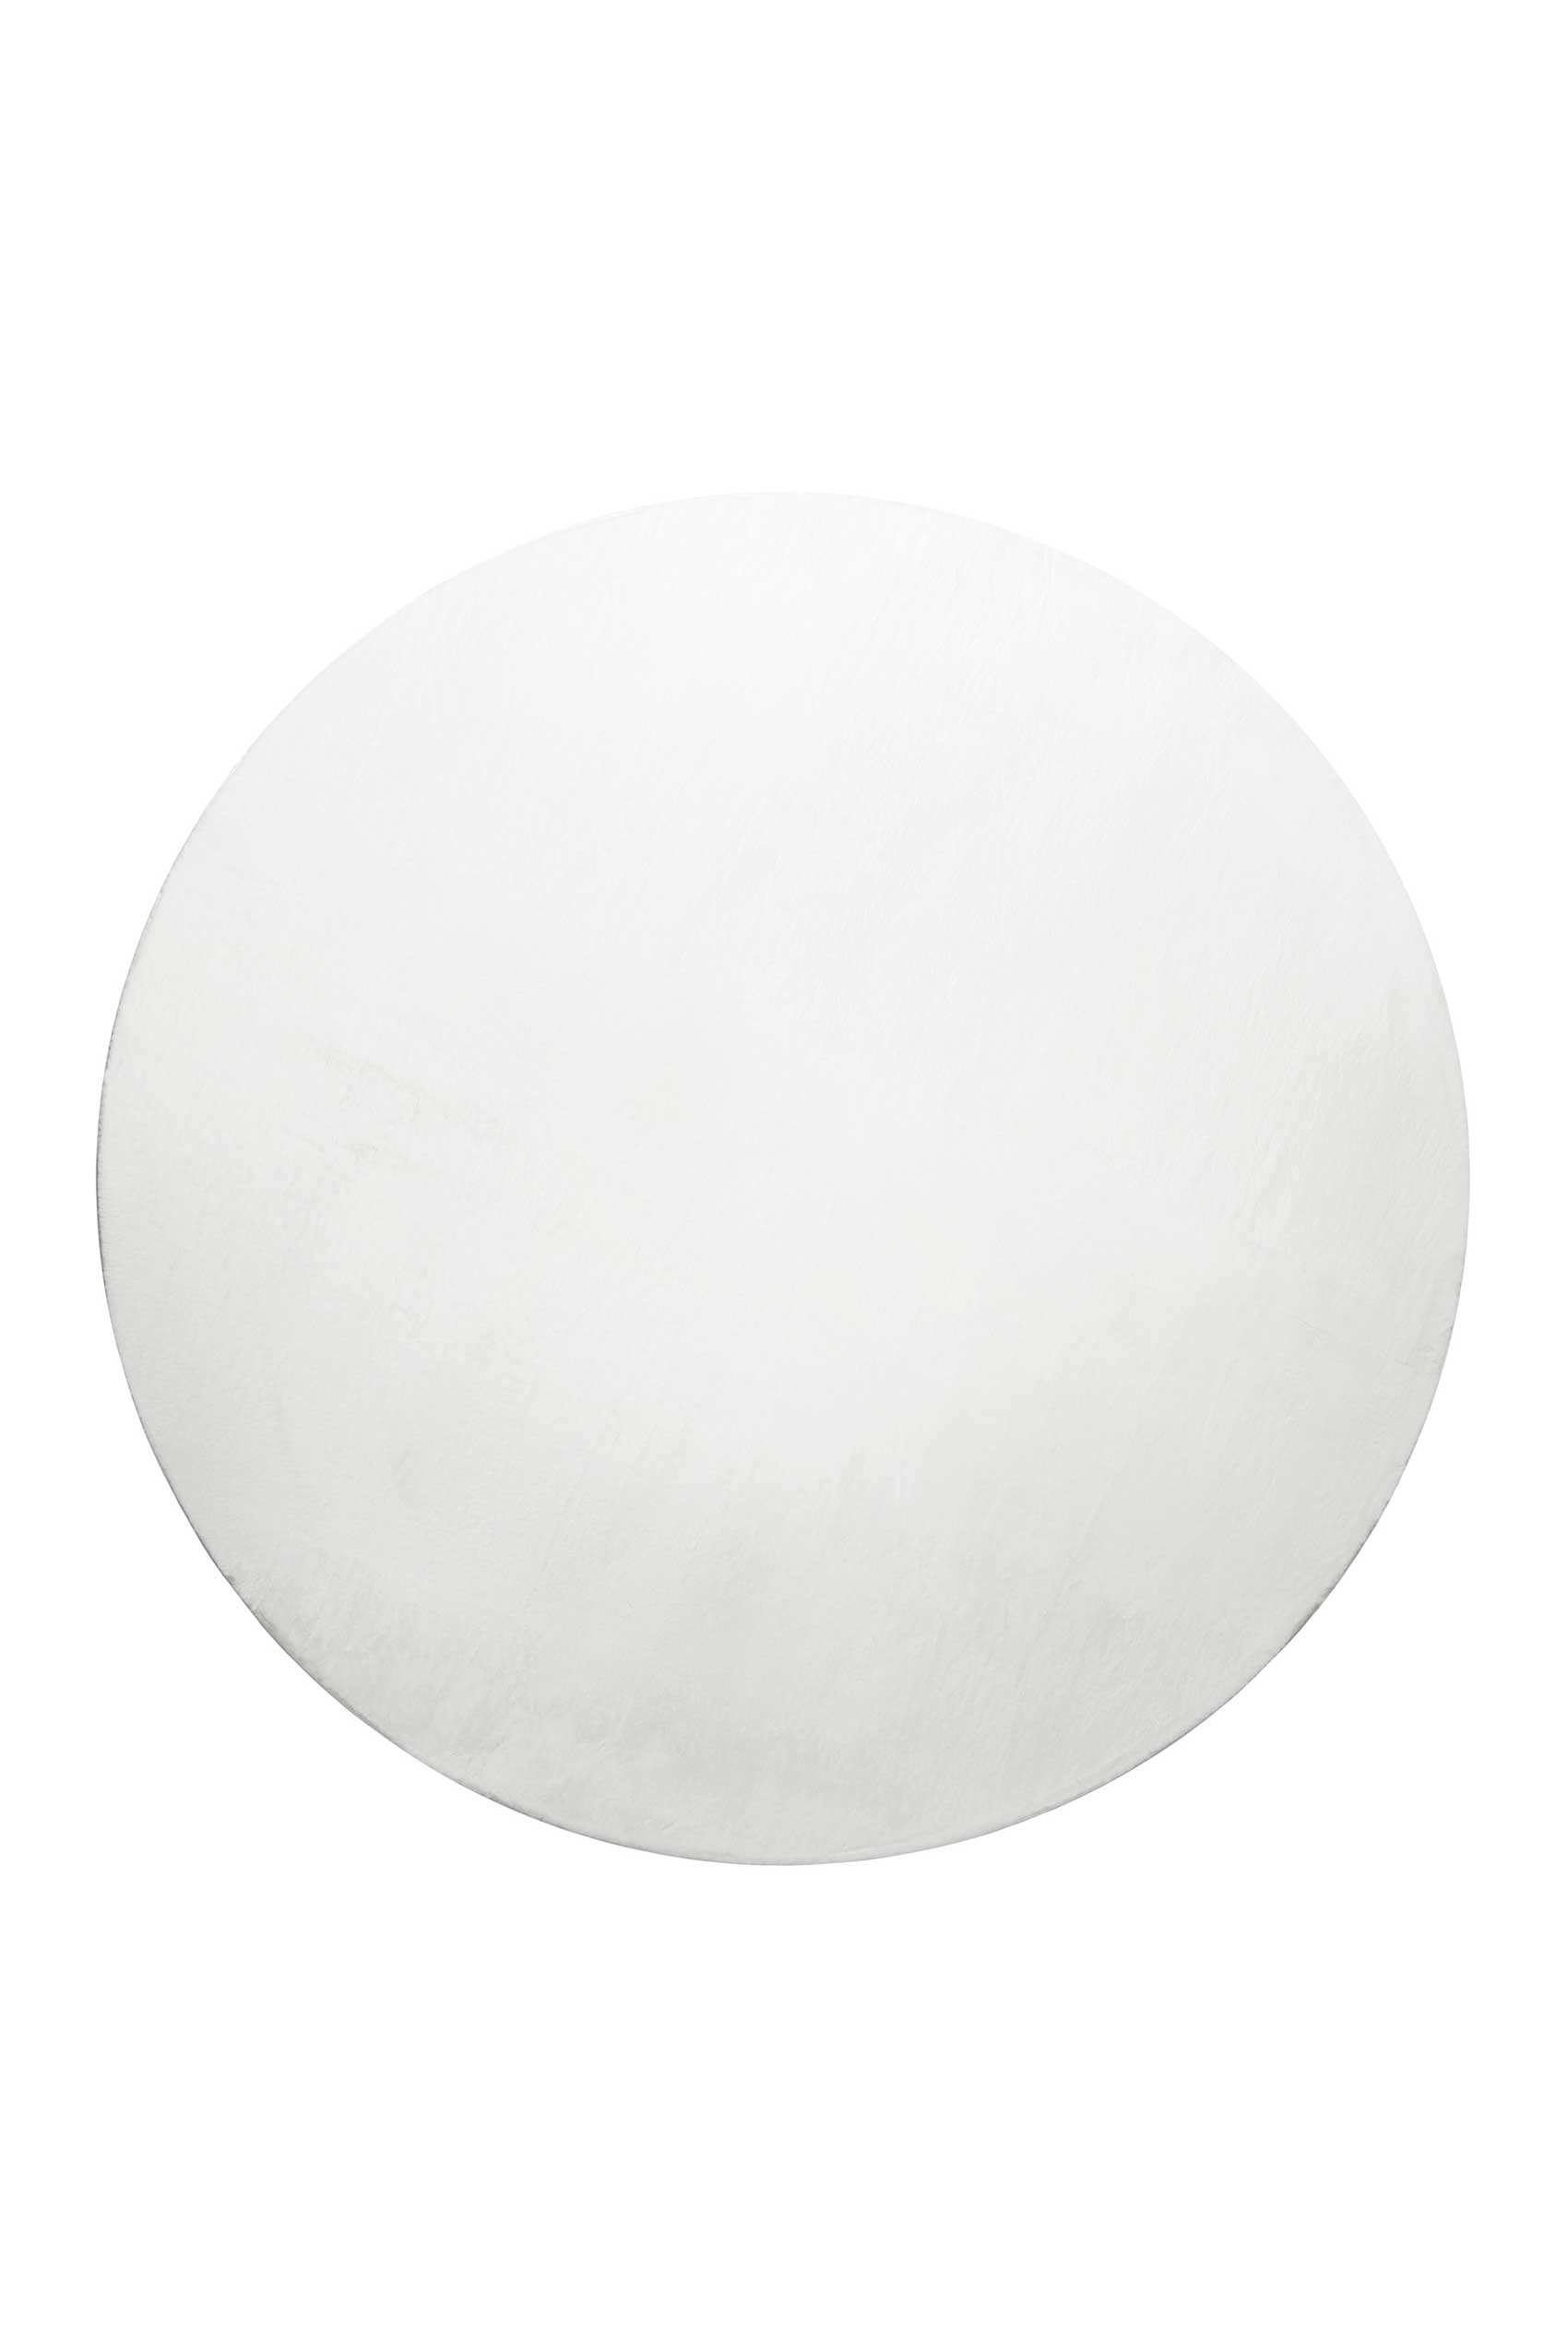 Tapis rond tufté mèches rases (15 mm) blanc 200 D